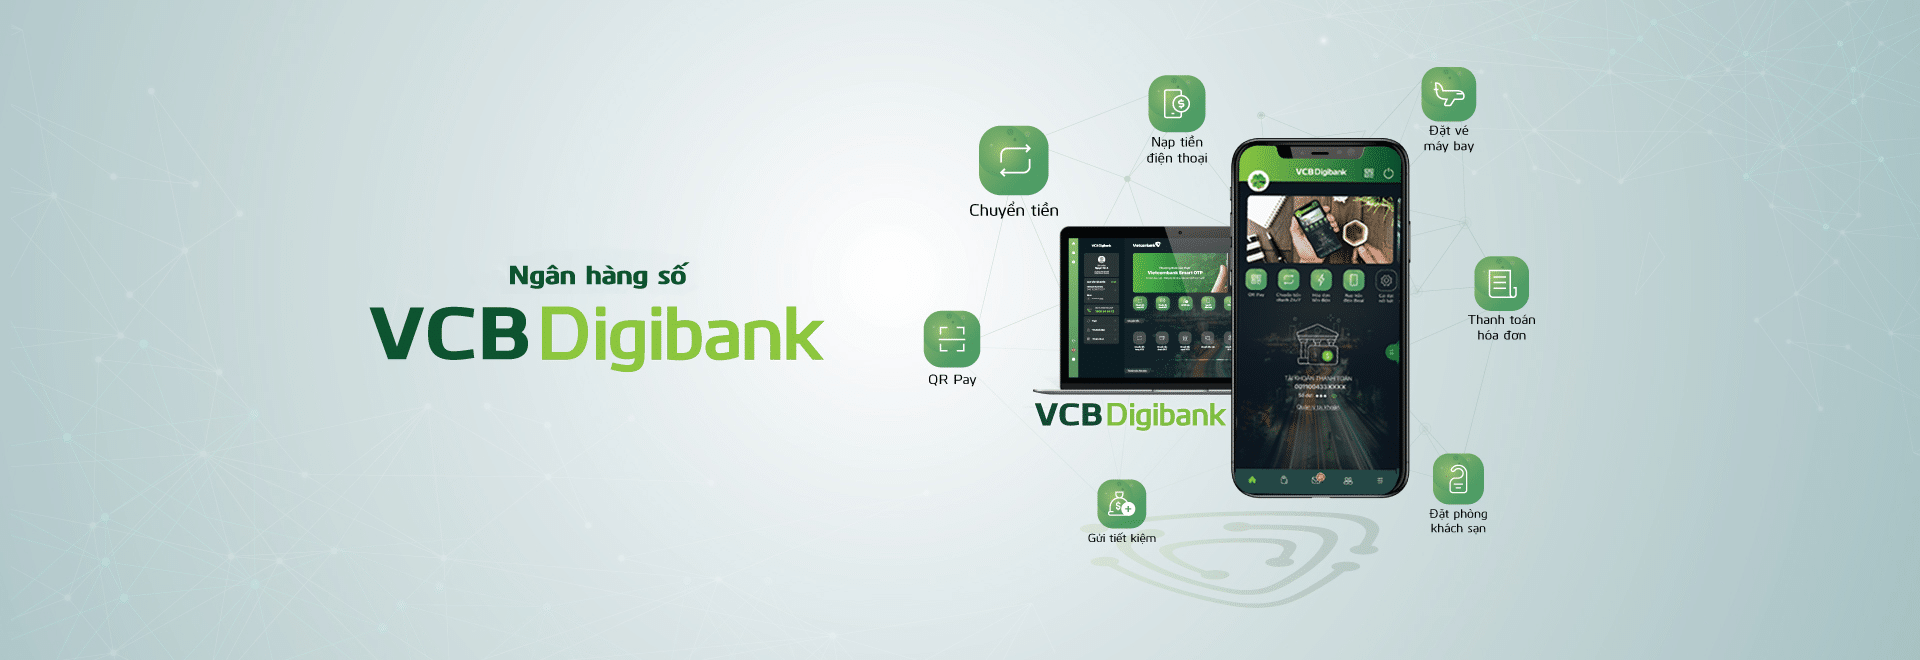 Dịch vụ ngân hàng số Vietcombank DigiBank là gì